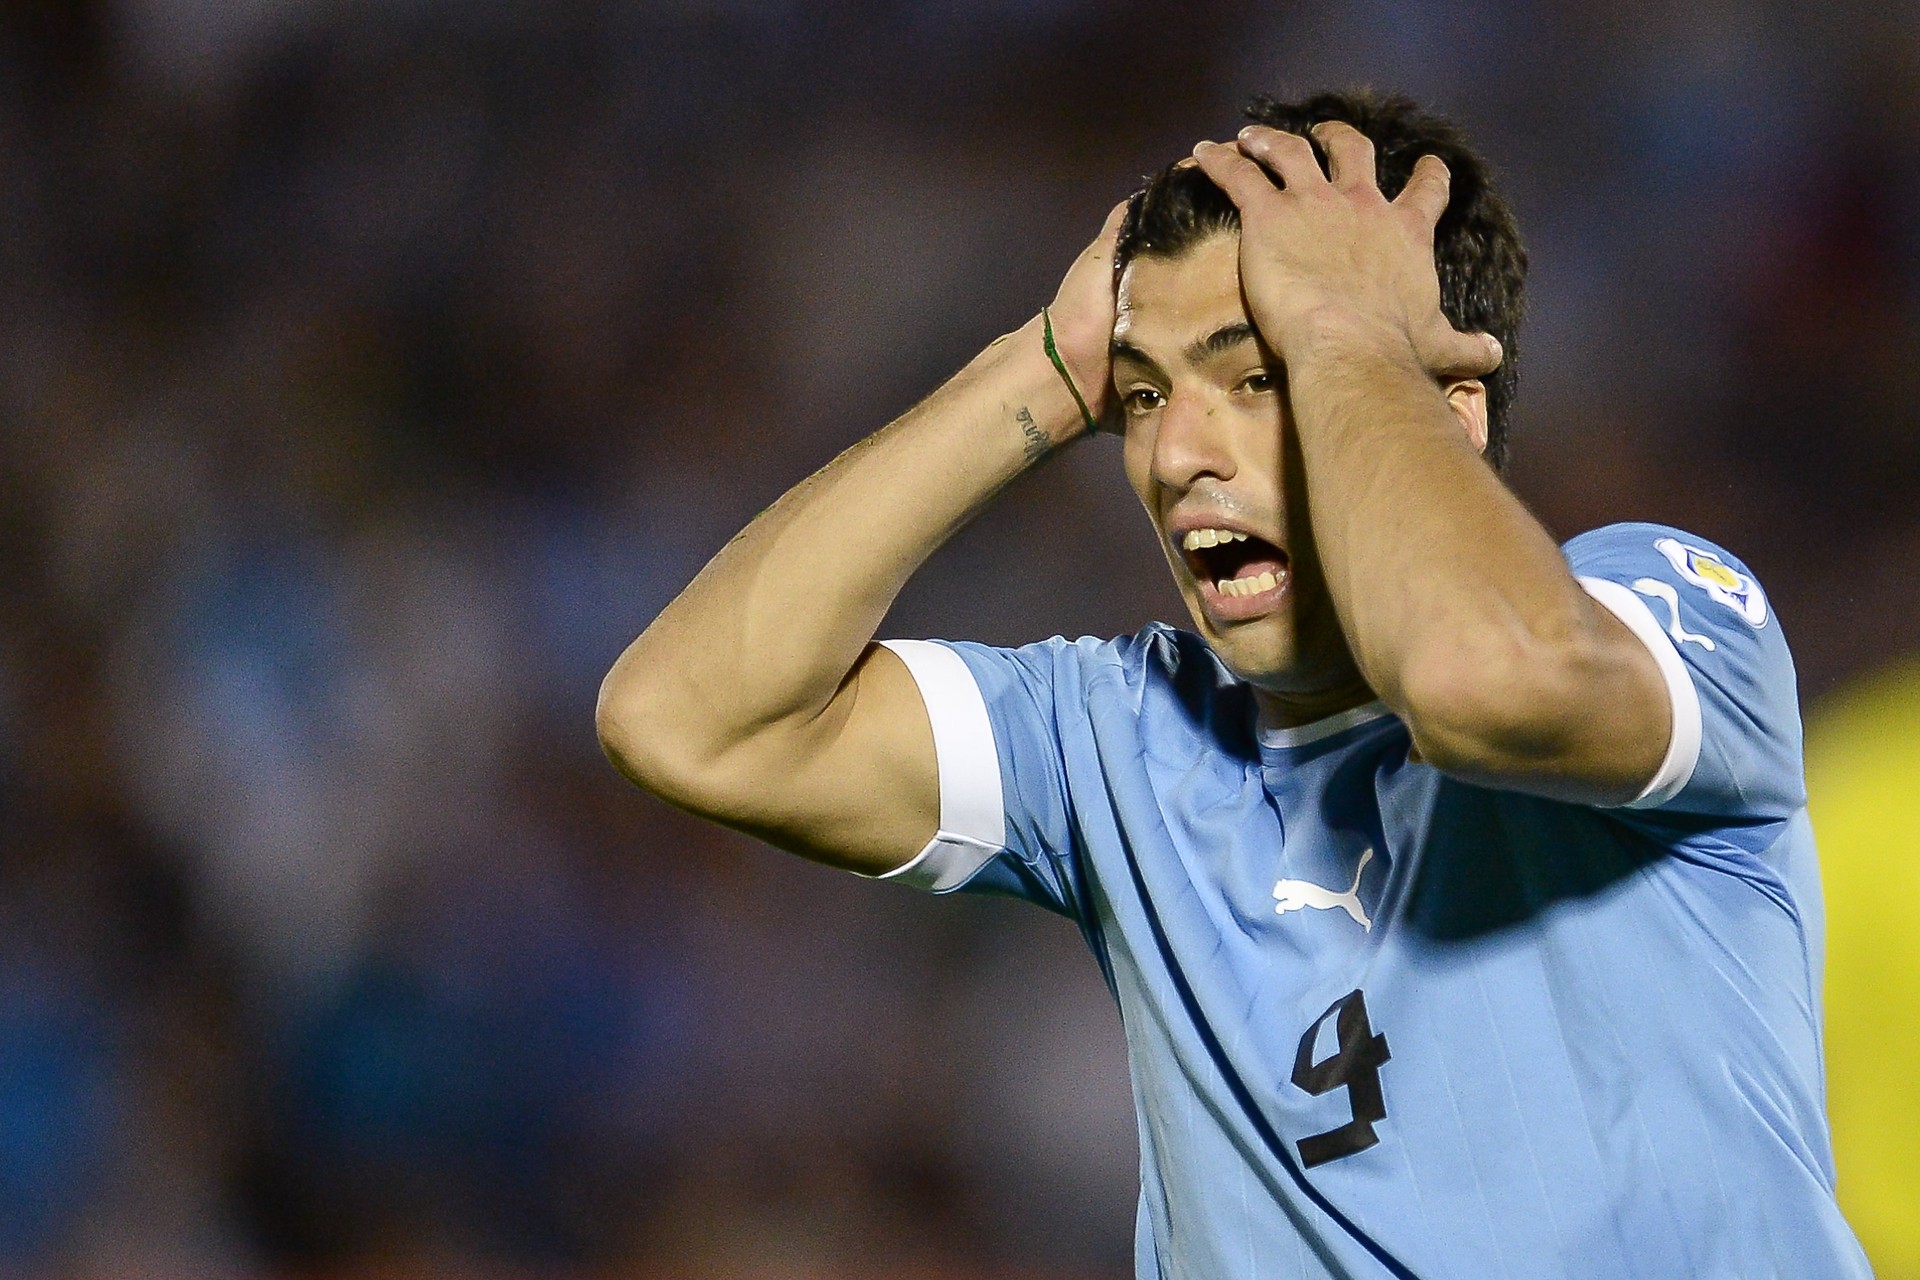 Com a lesão de última hora, Suárez dificilmente estará 100% no Mundial (Foto: Getty Images)